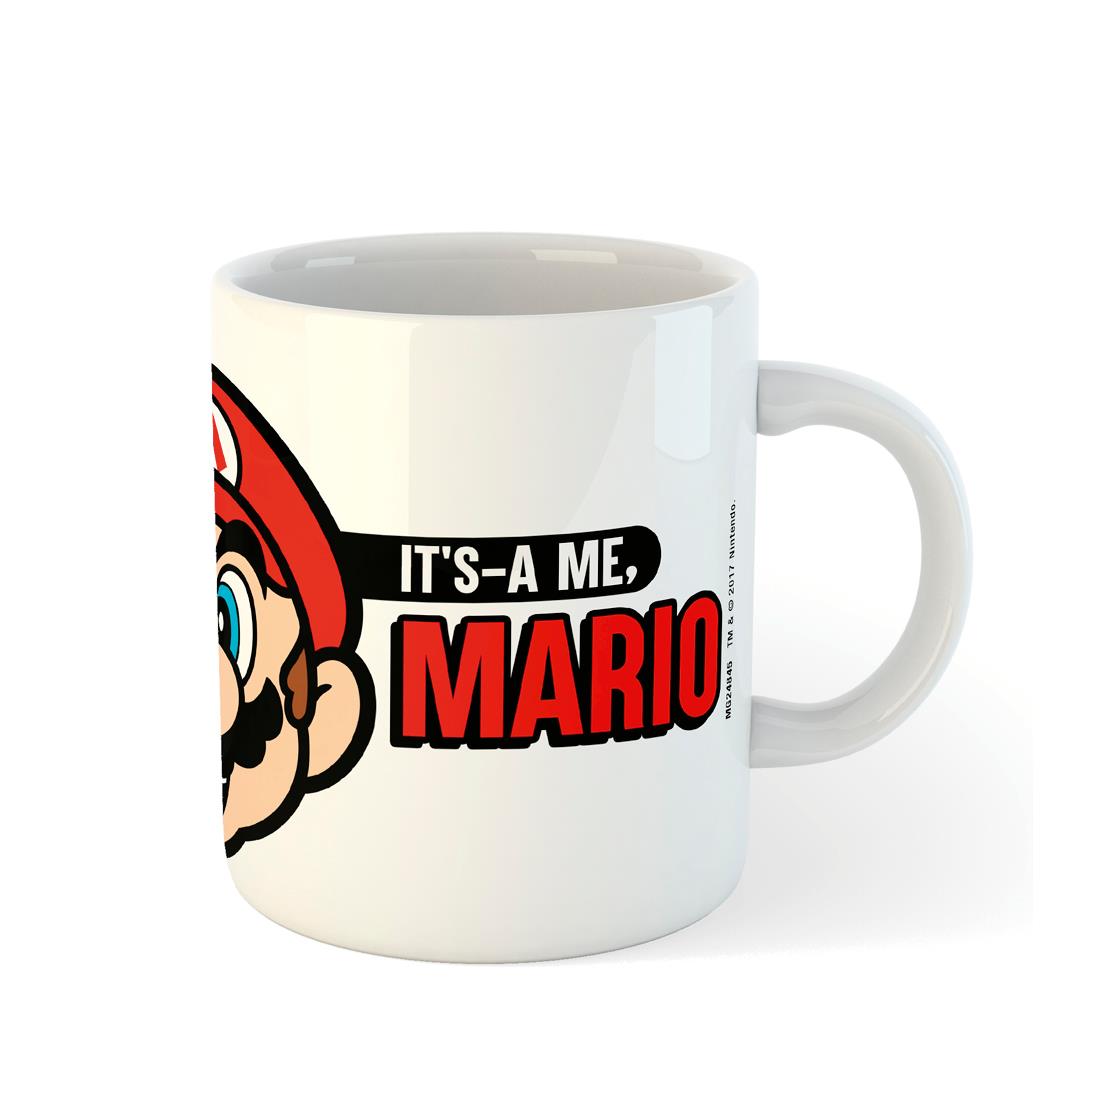 super mario - it's a me mario mug